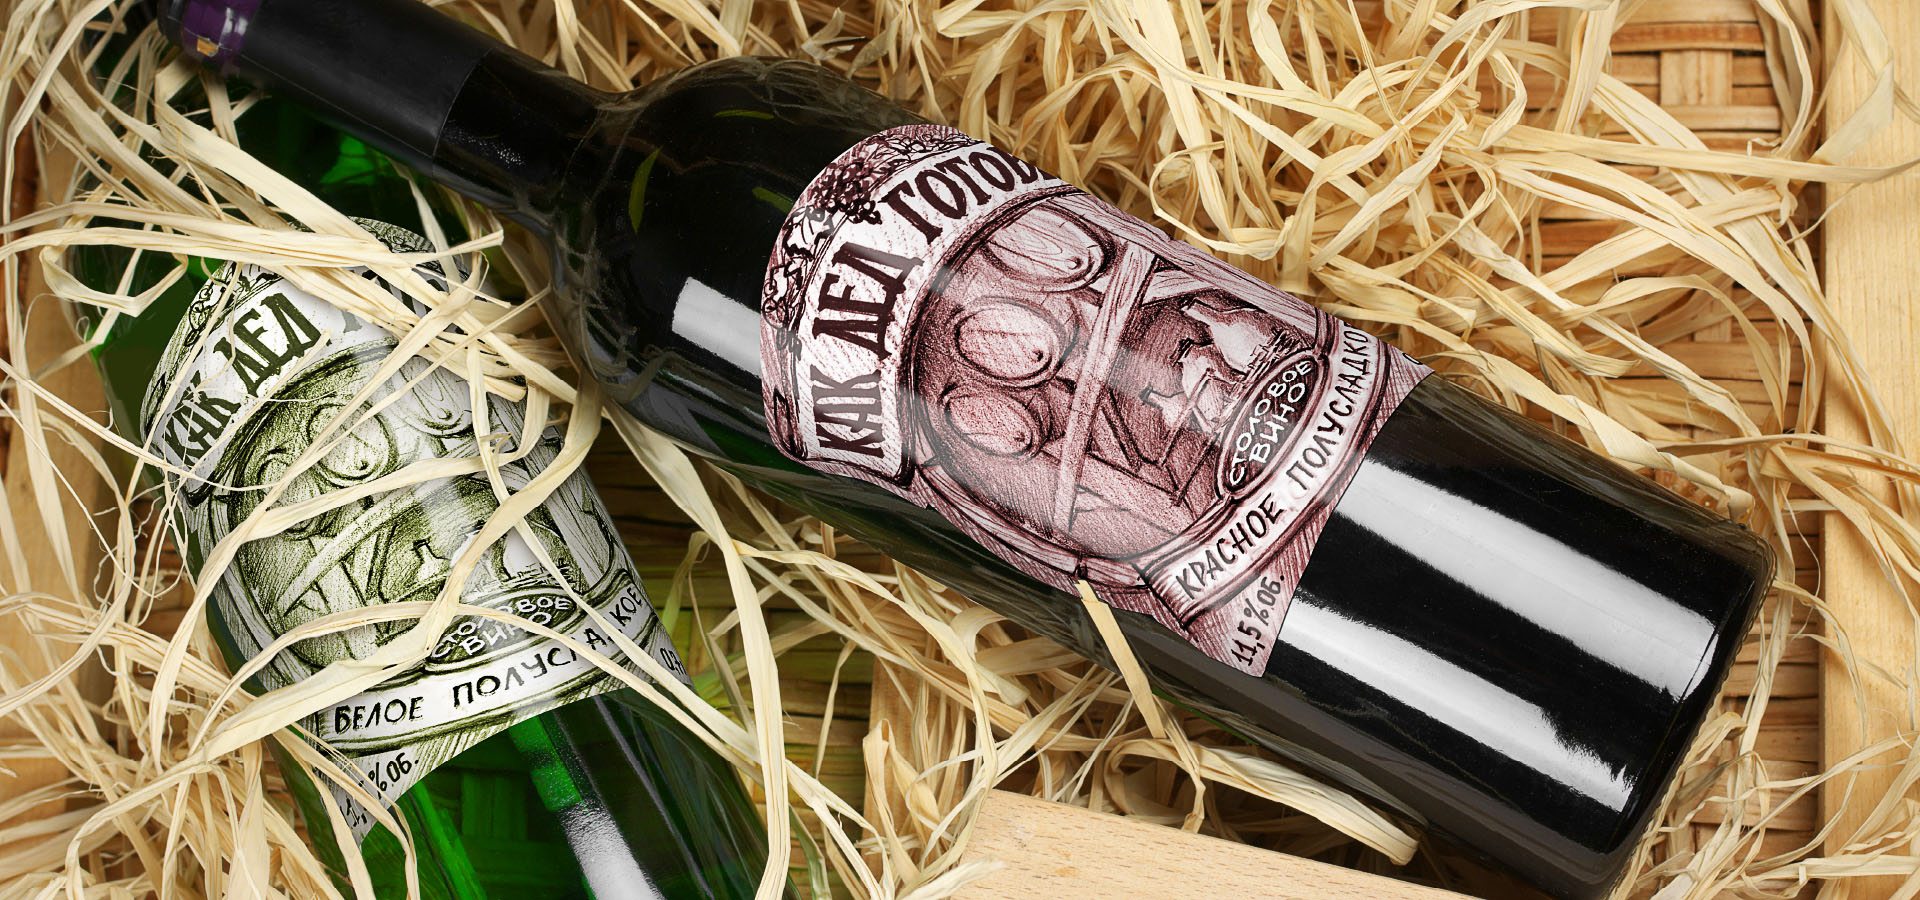 Брендинговым агентством Stors был разработан новый дизайн этикетки для линейки вин